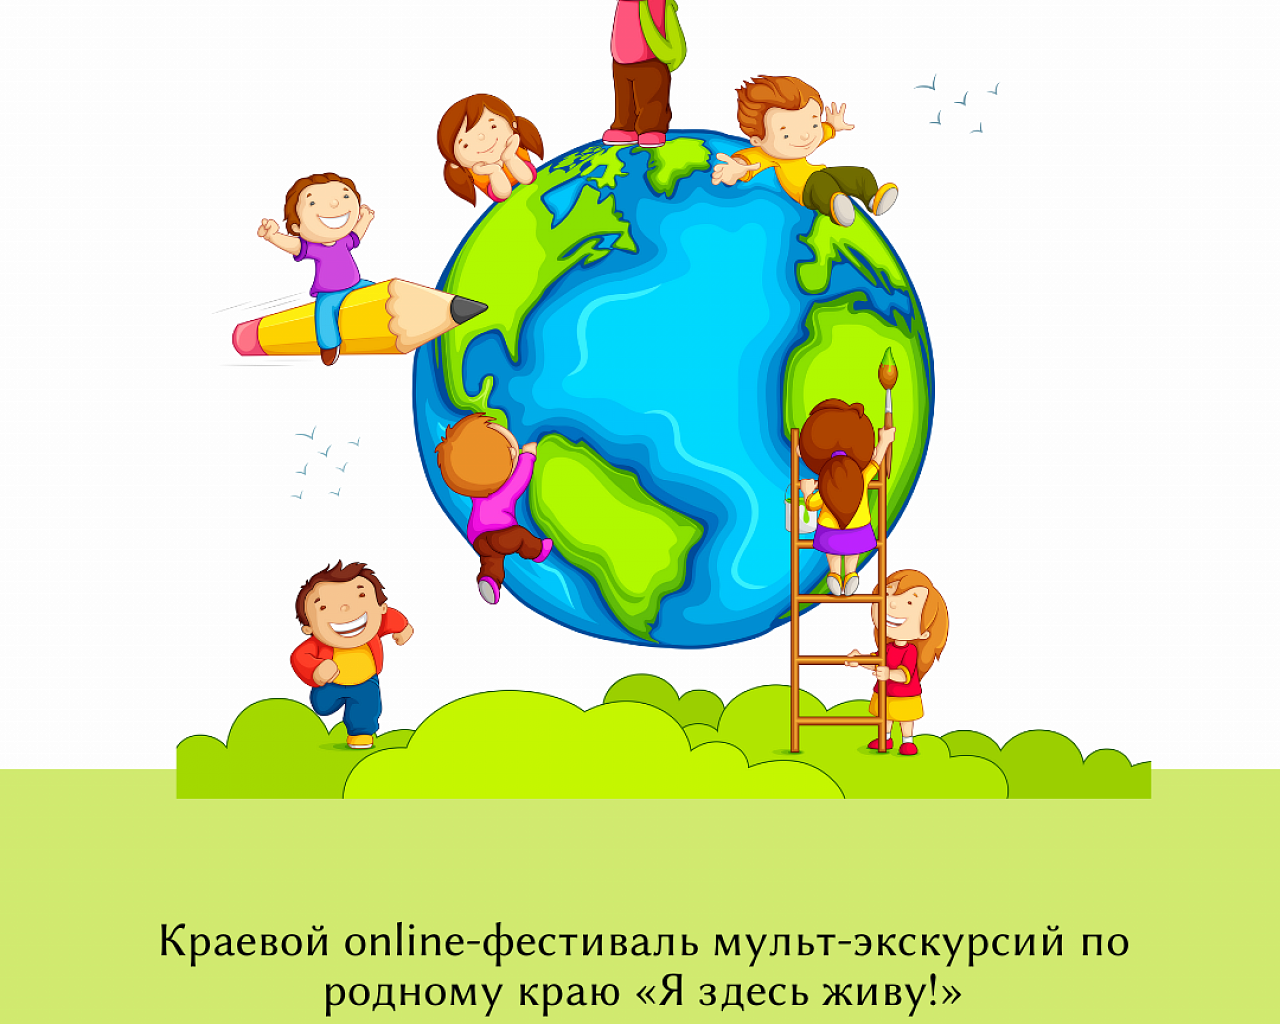 Краевой online-фестиваль мульт-экскурсий по родному краю «Я здесь живу!»